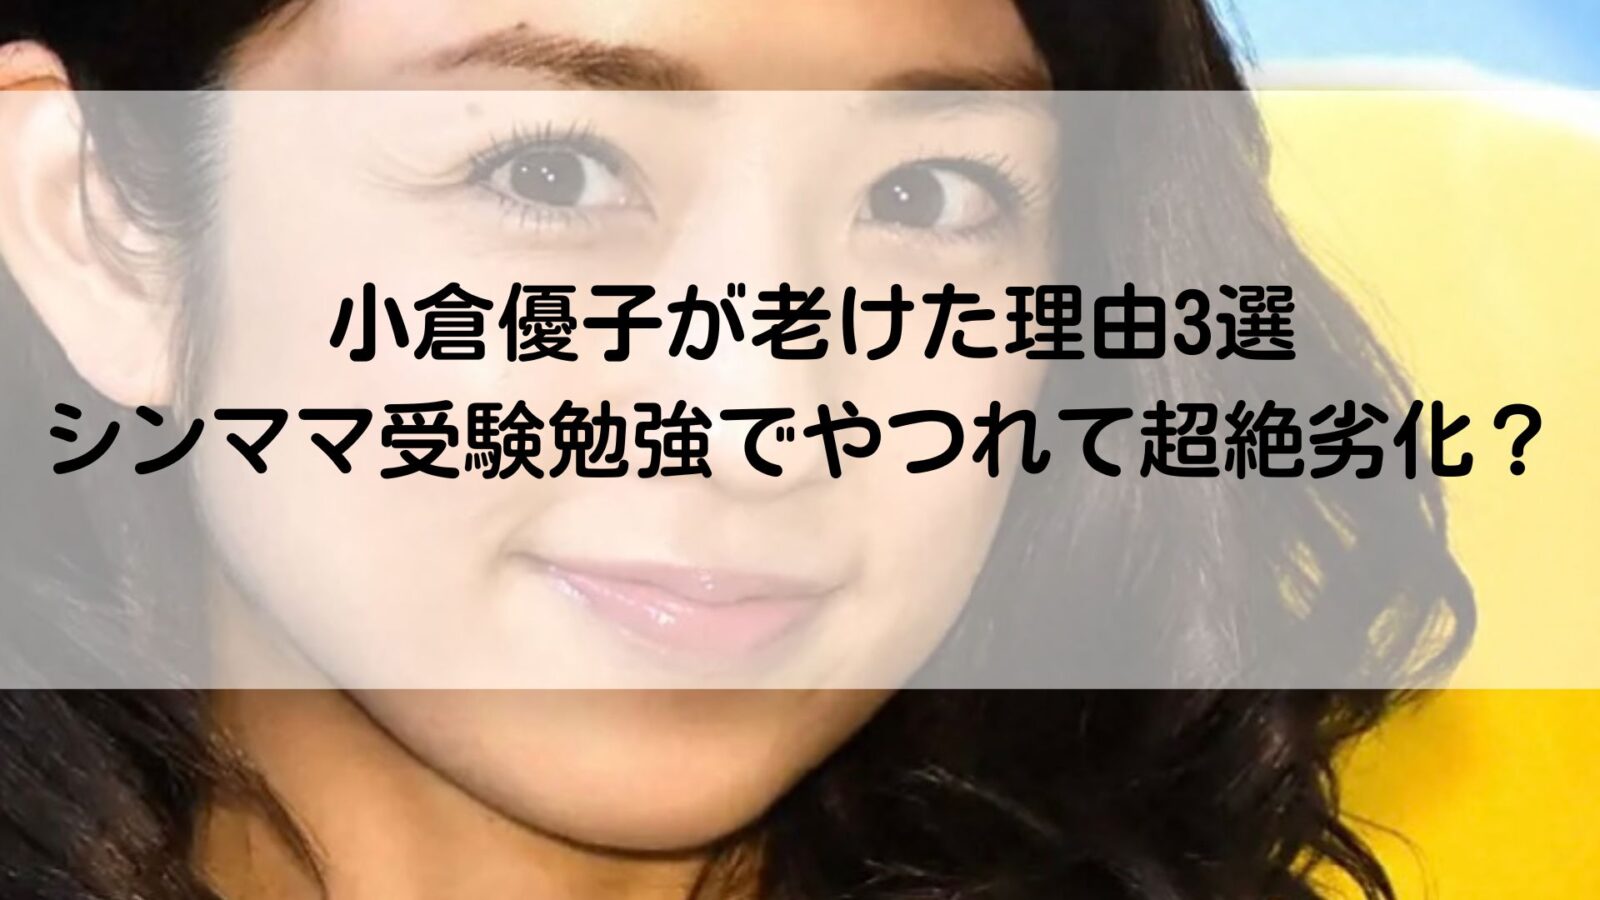 小倉優子の記事のアイキャッチ画像